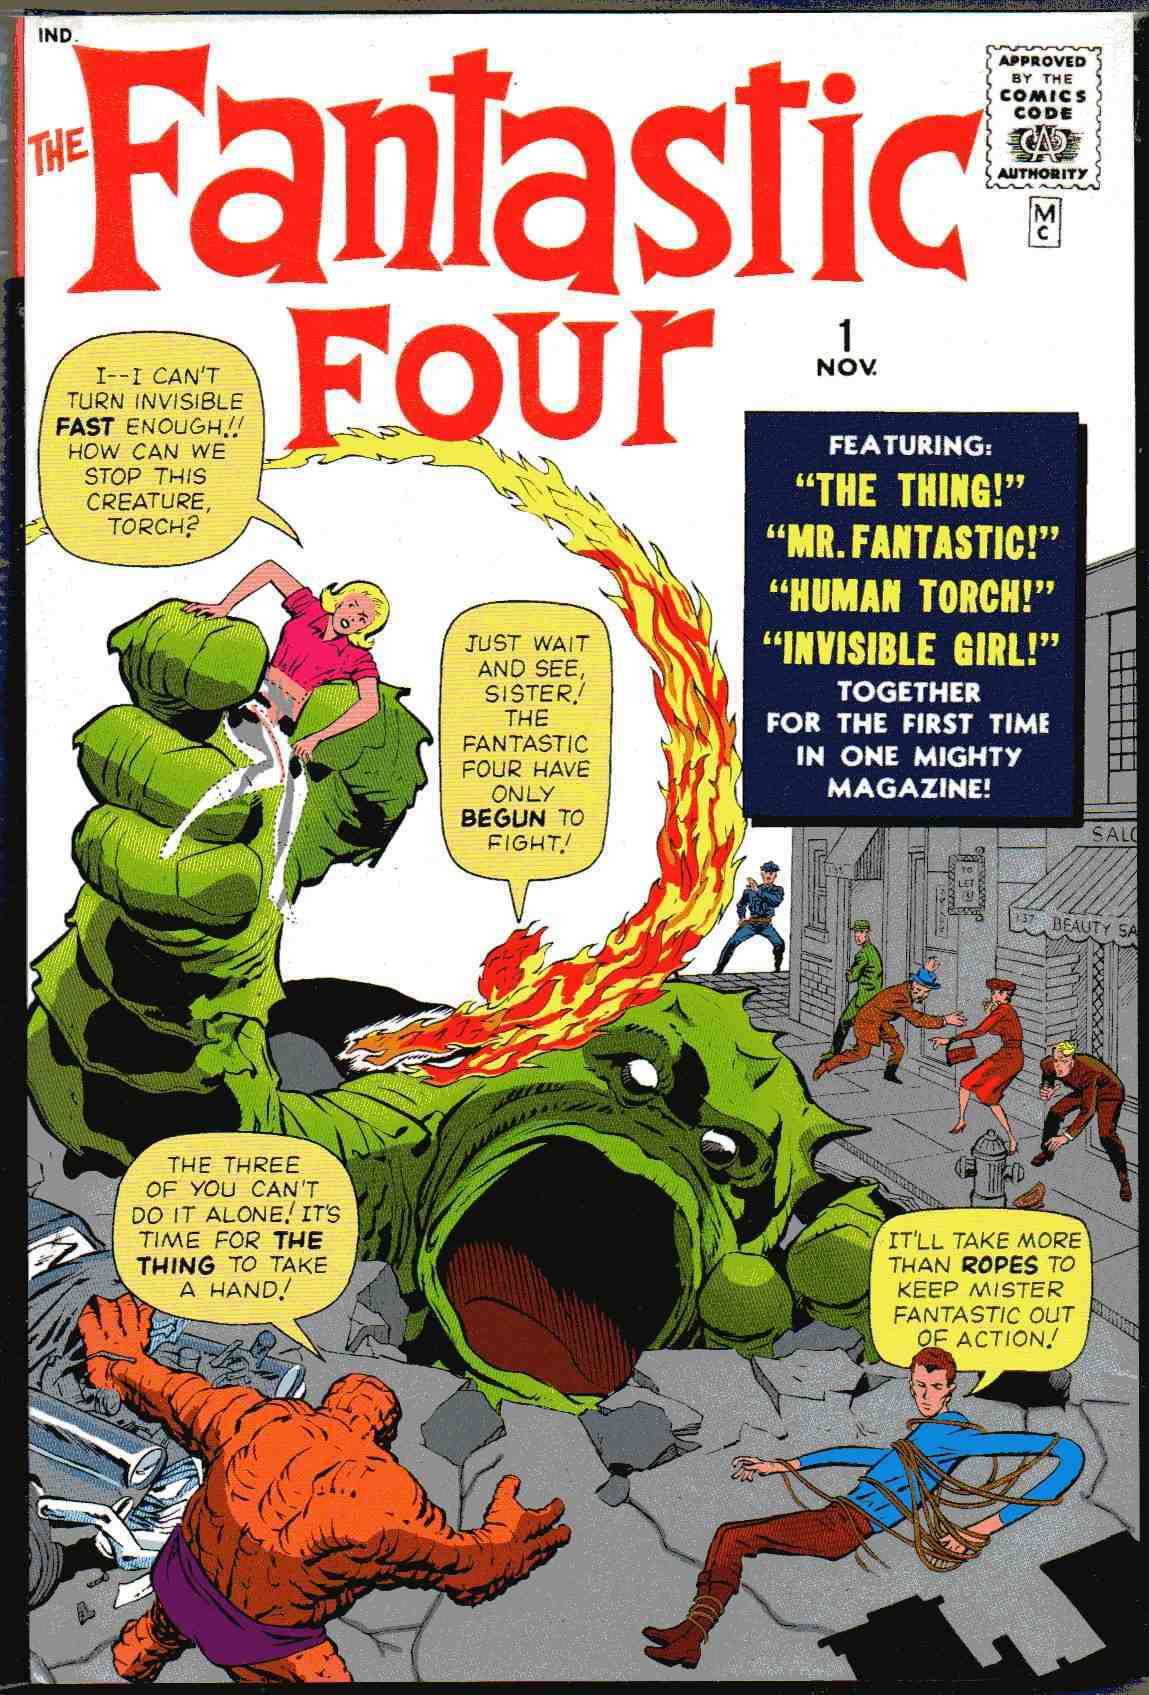 Fantastic Four #1, published in November 1961 © Marvel